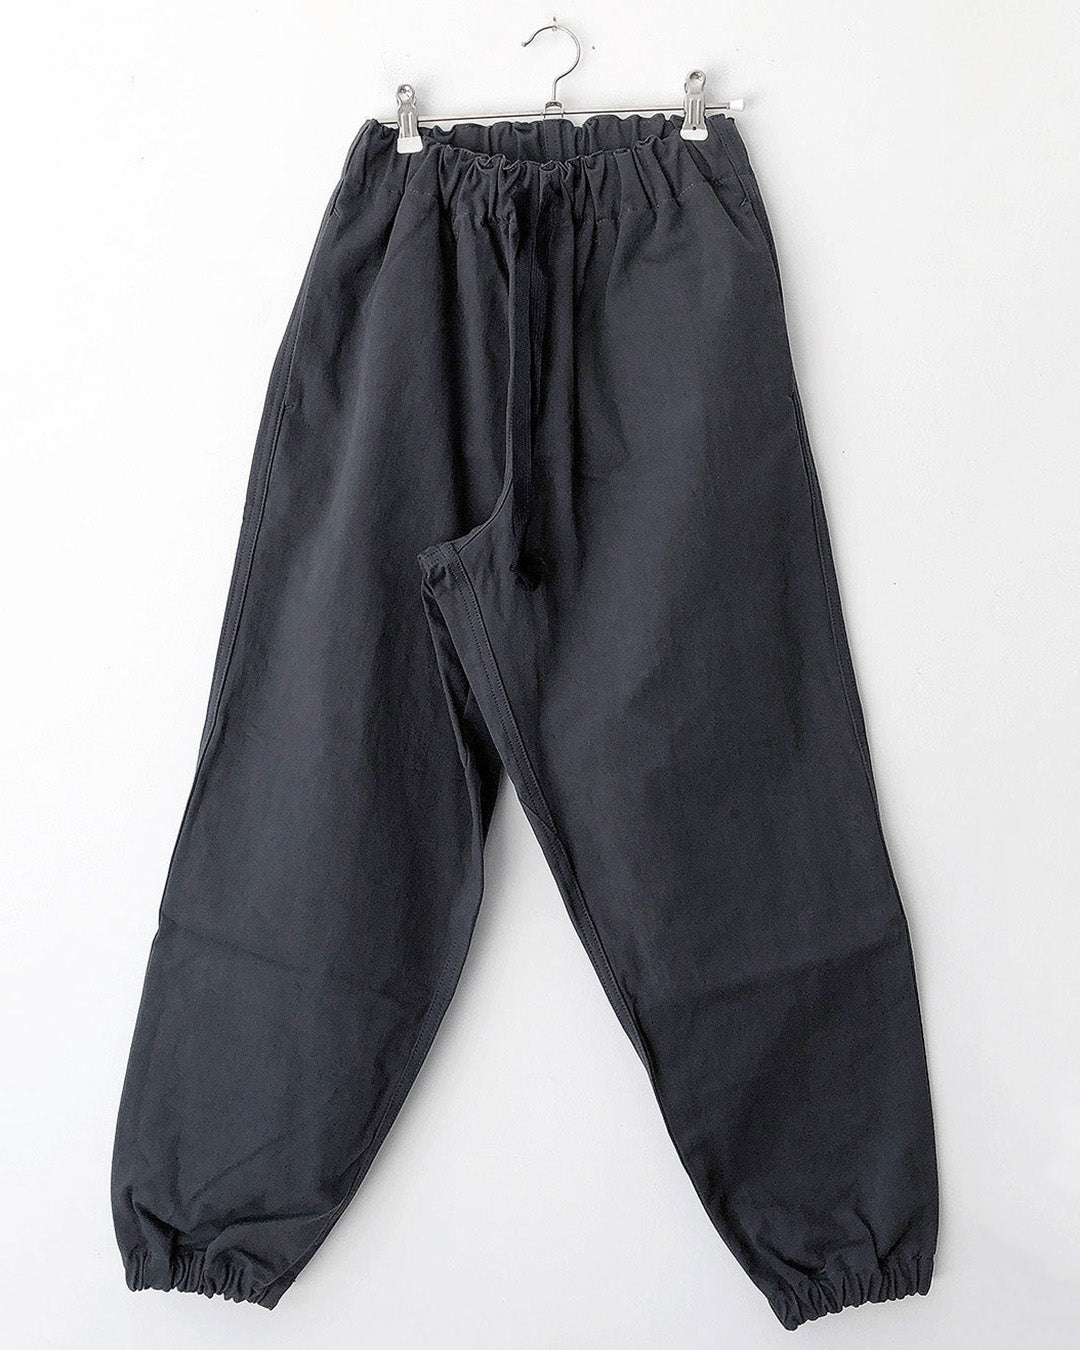 TUKI gum pants / steel blue / solid twill / size0,2